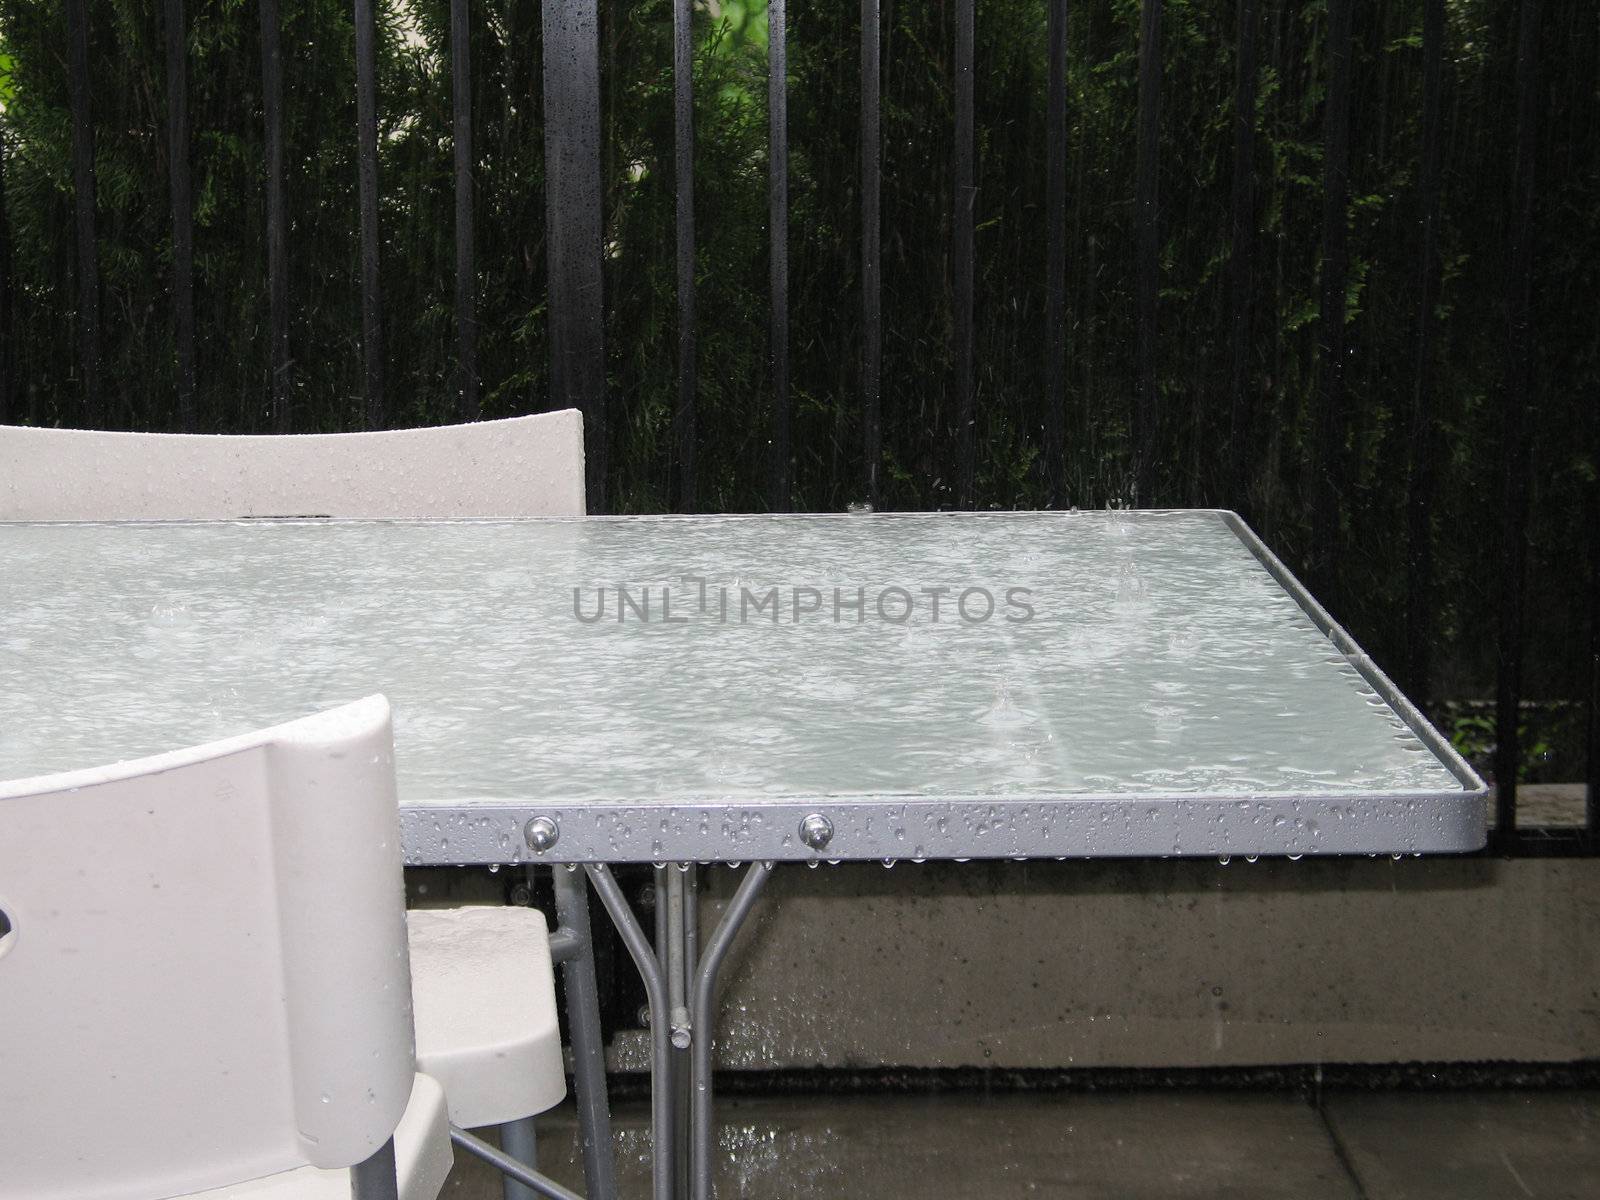 heavy rain on a table